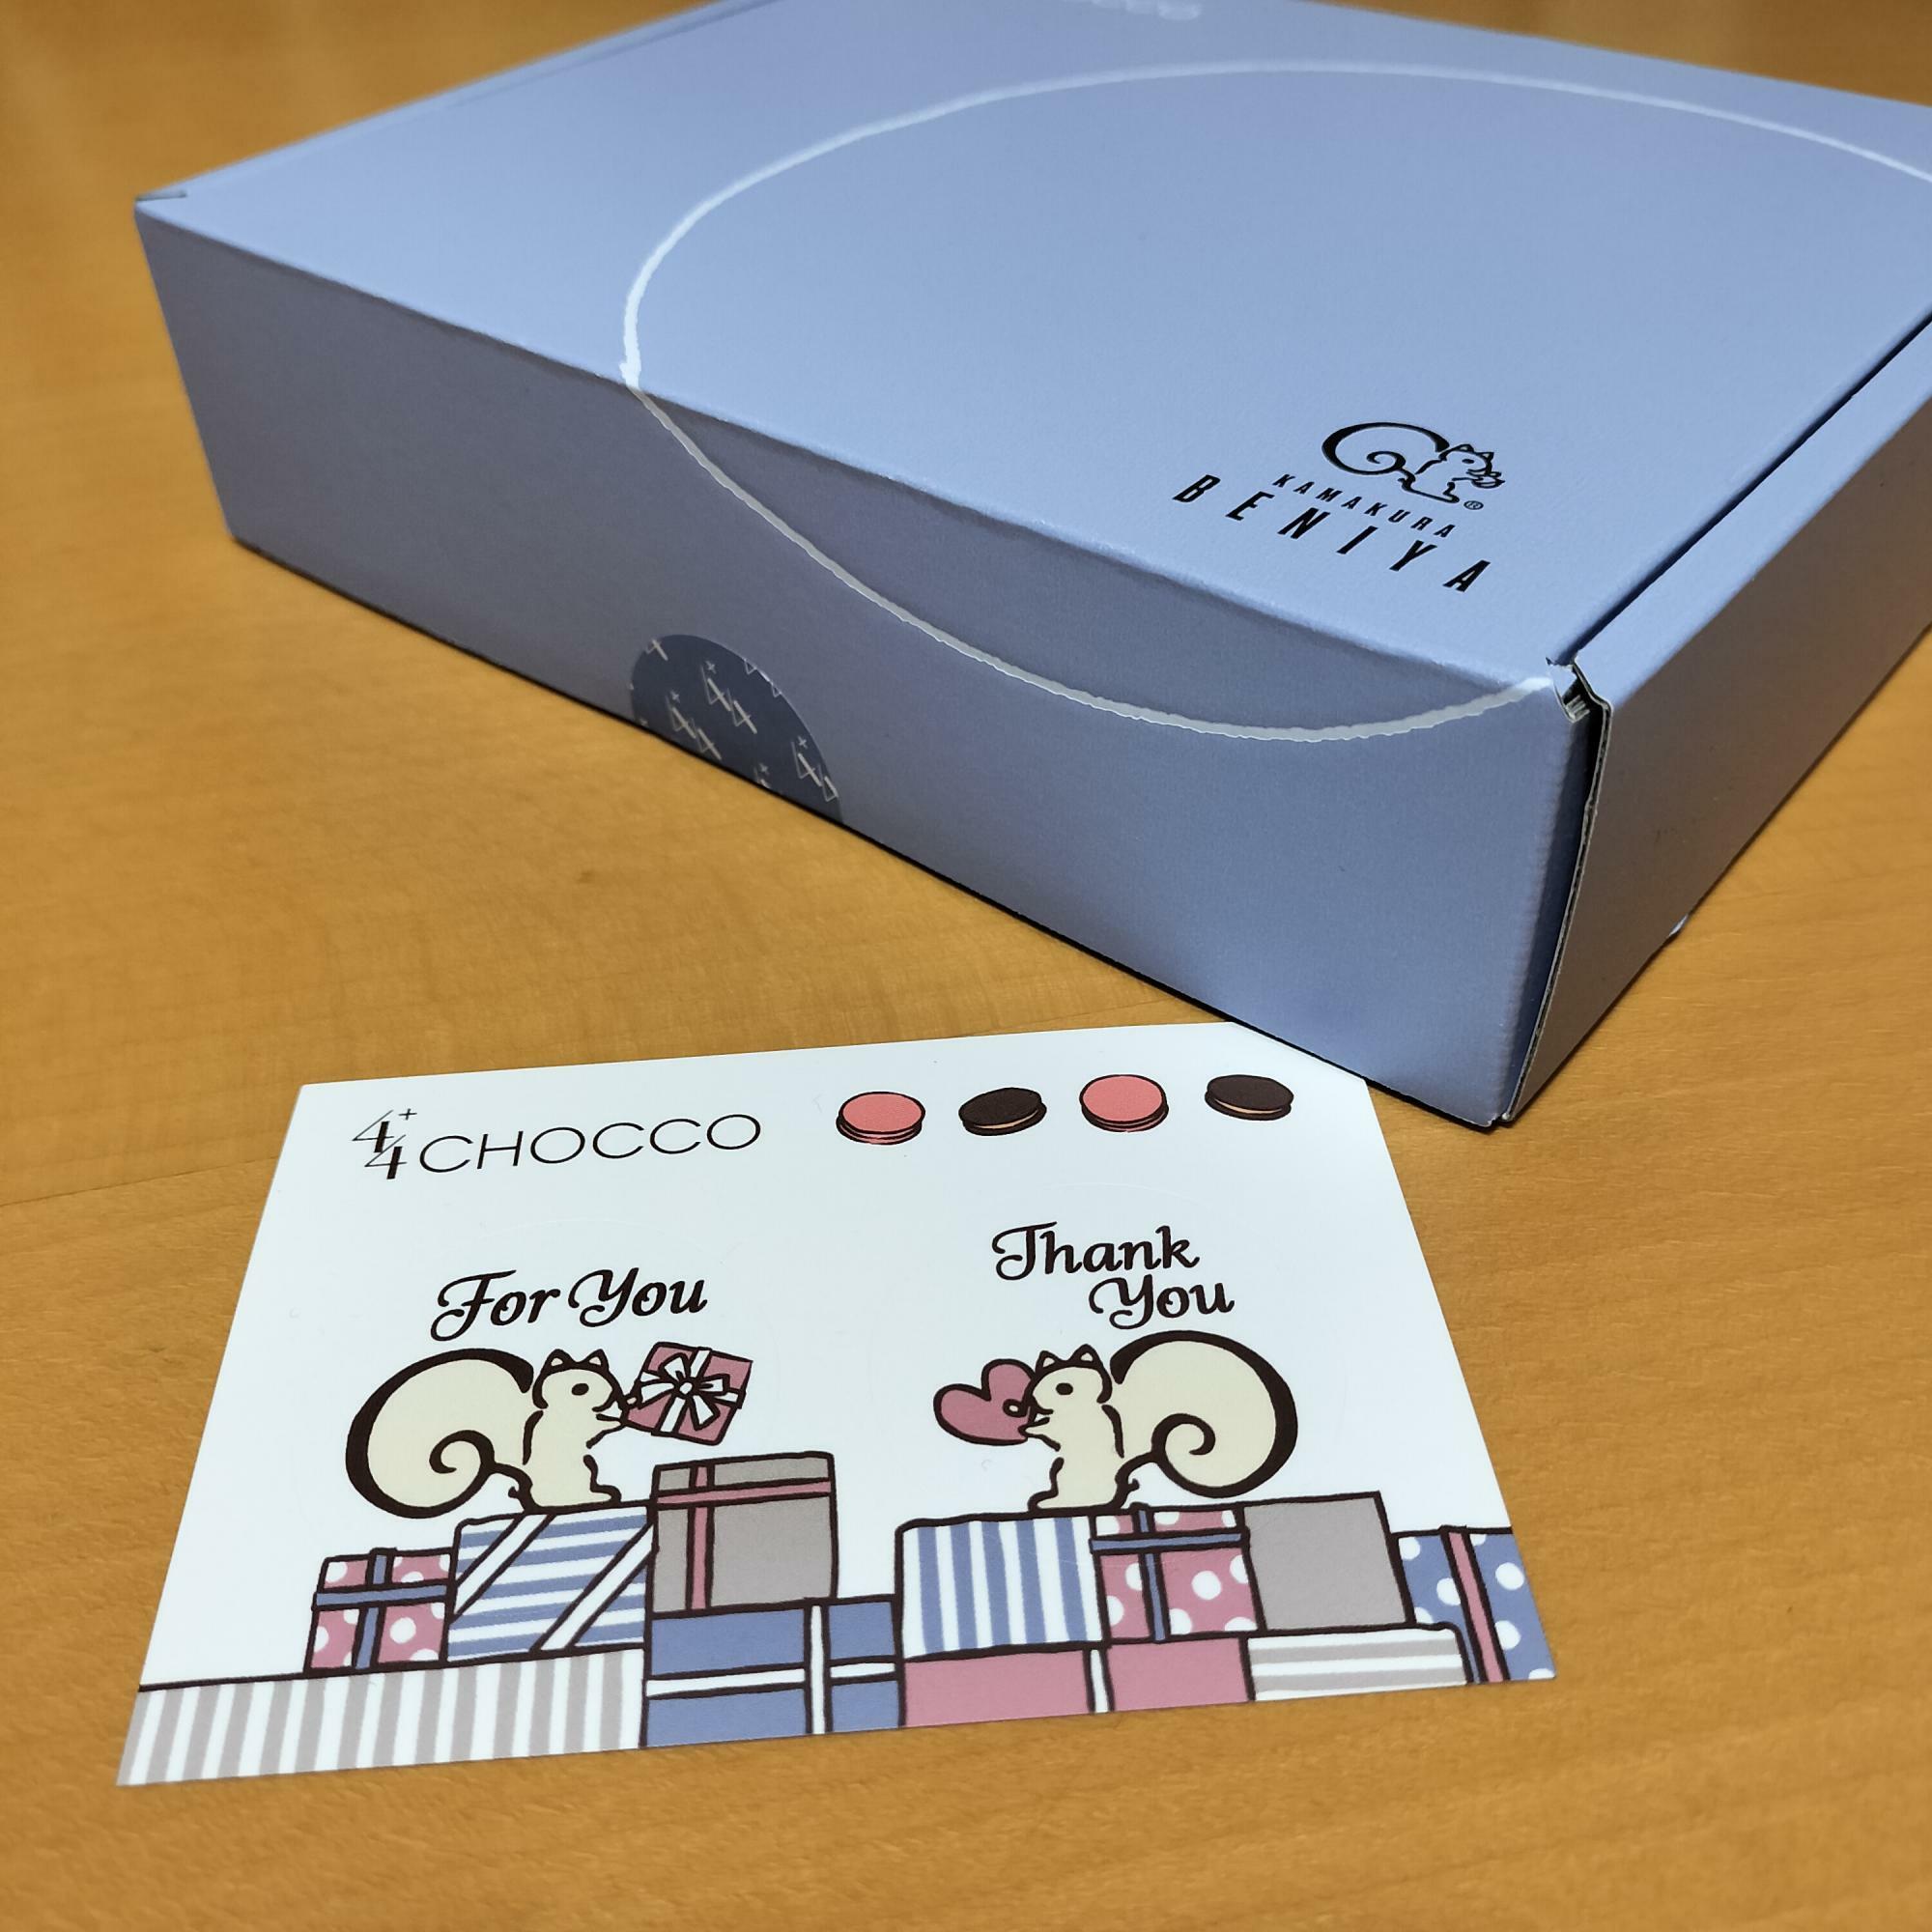 「CHOCCO」２種類×４個の8個入りはブルーの箱。２種類×2個の4個入りはピンクの箱。手前が特典のシール